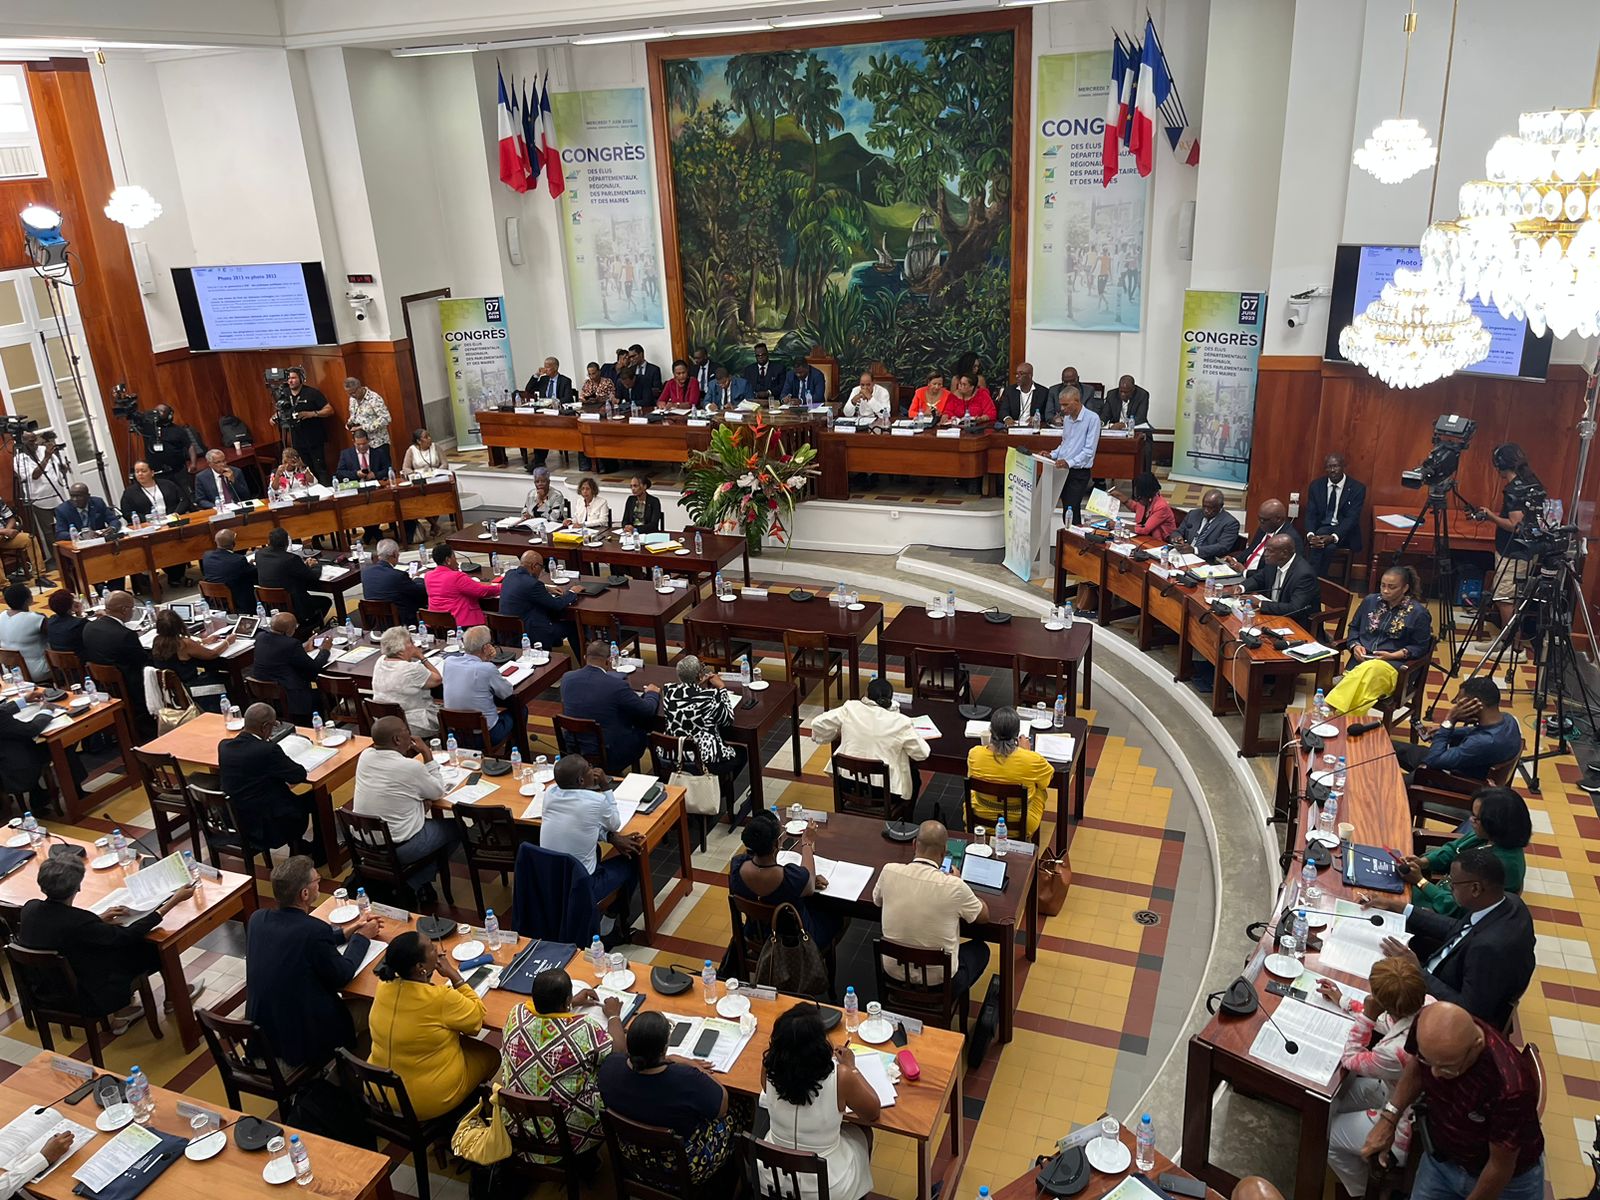     Congrès des élus de Guadeloupe : que faut-il en retenir ?

